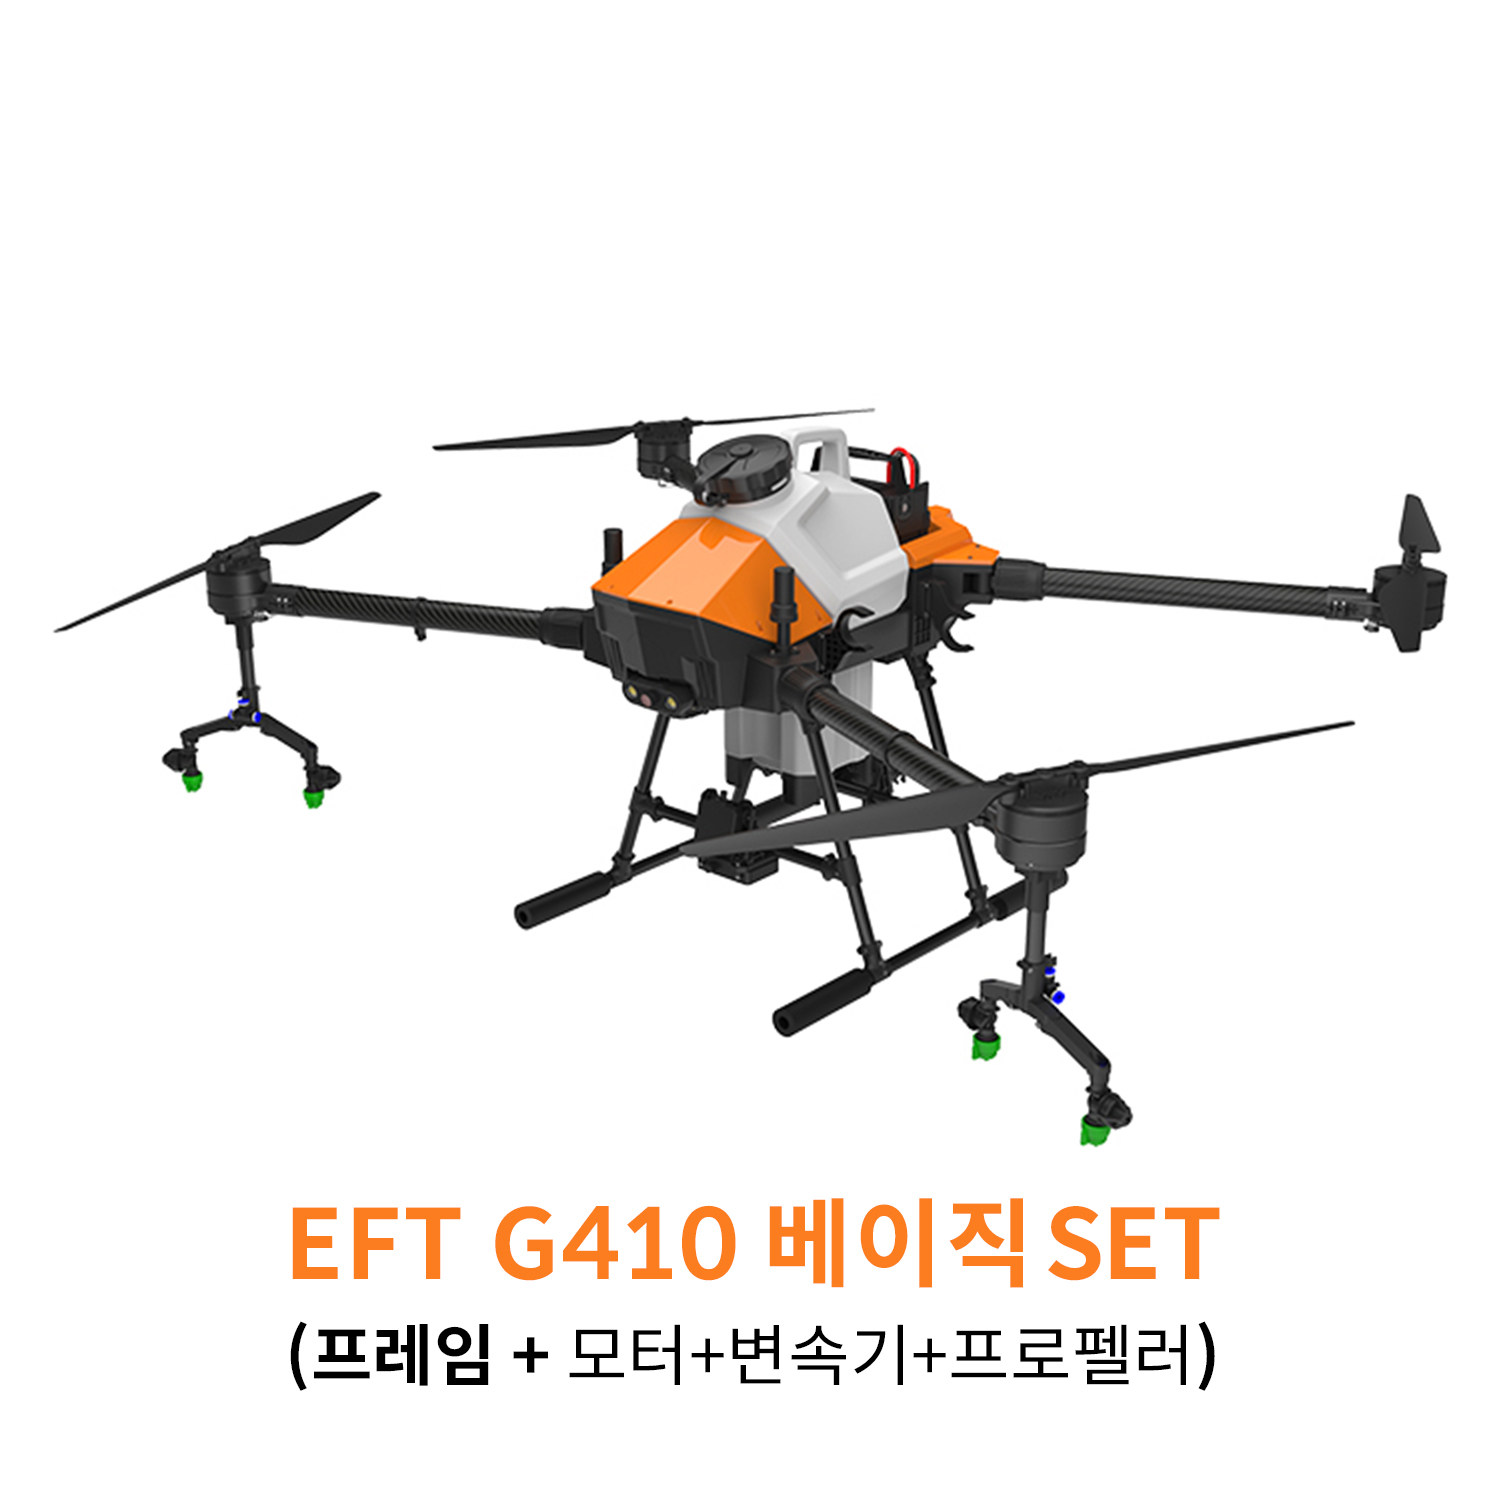 EFT G410 베이직 SET 농업 방제 드론하비윙 x8 파워시스템 탑재 헬셀